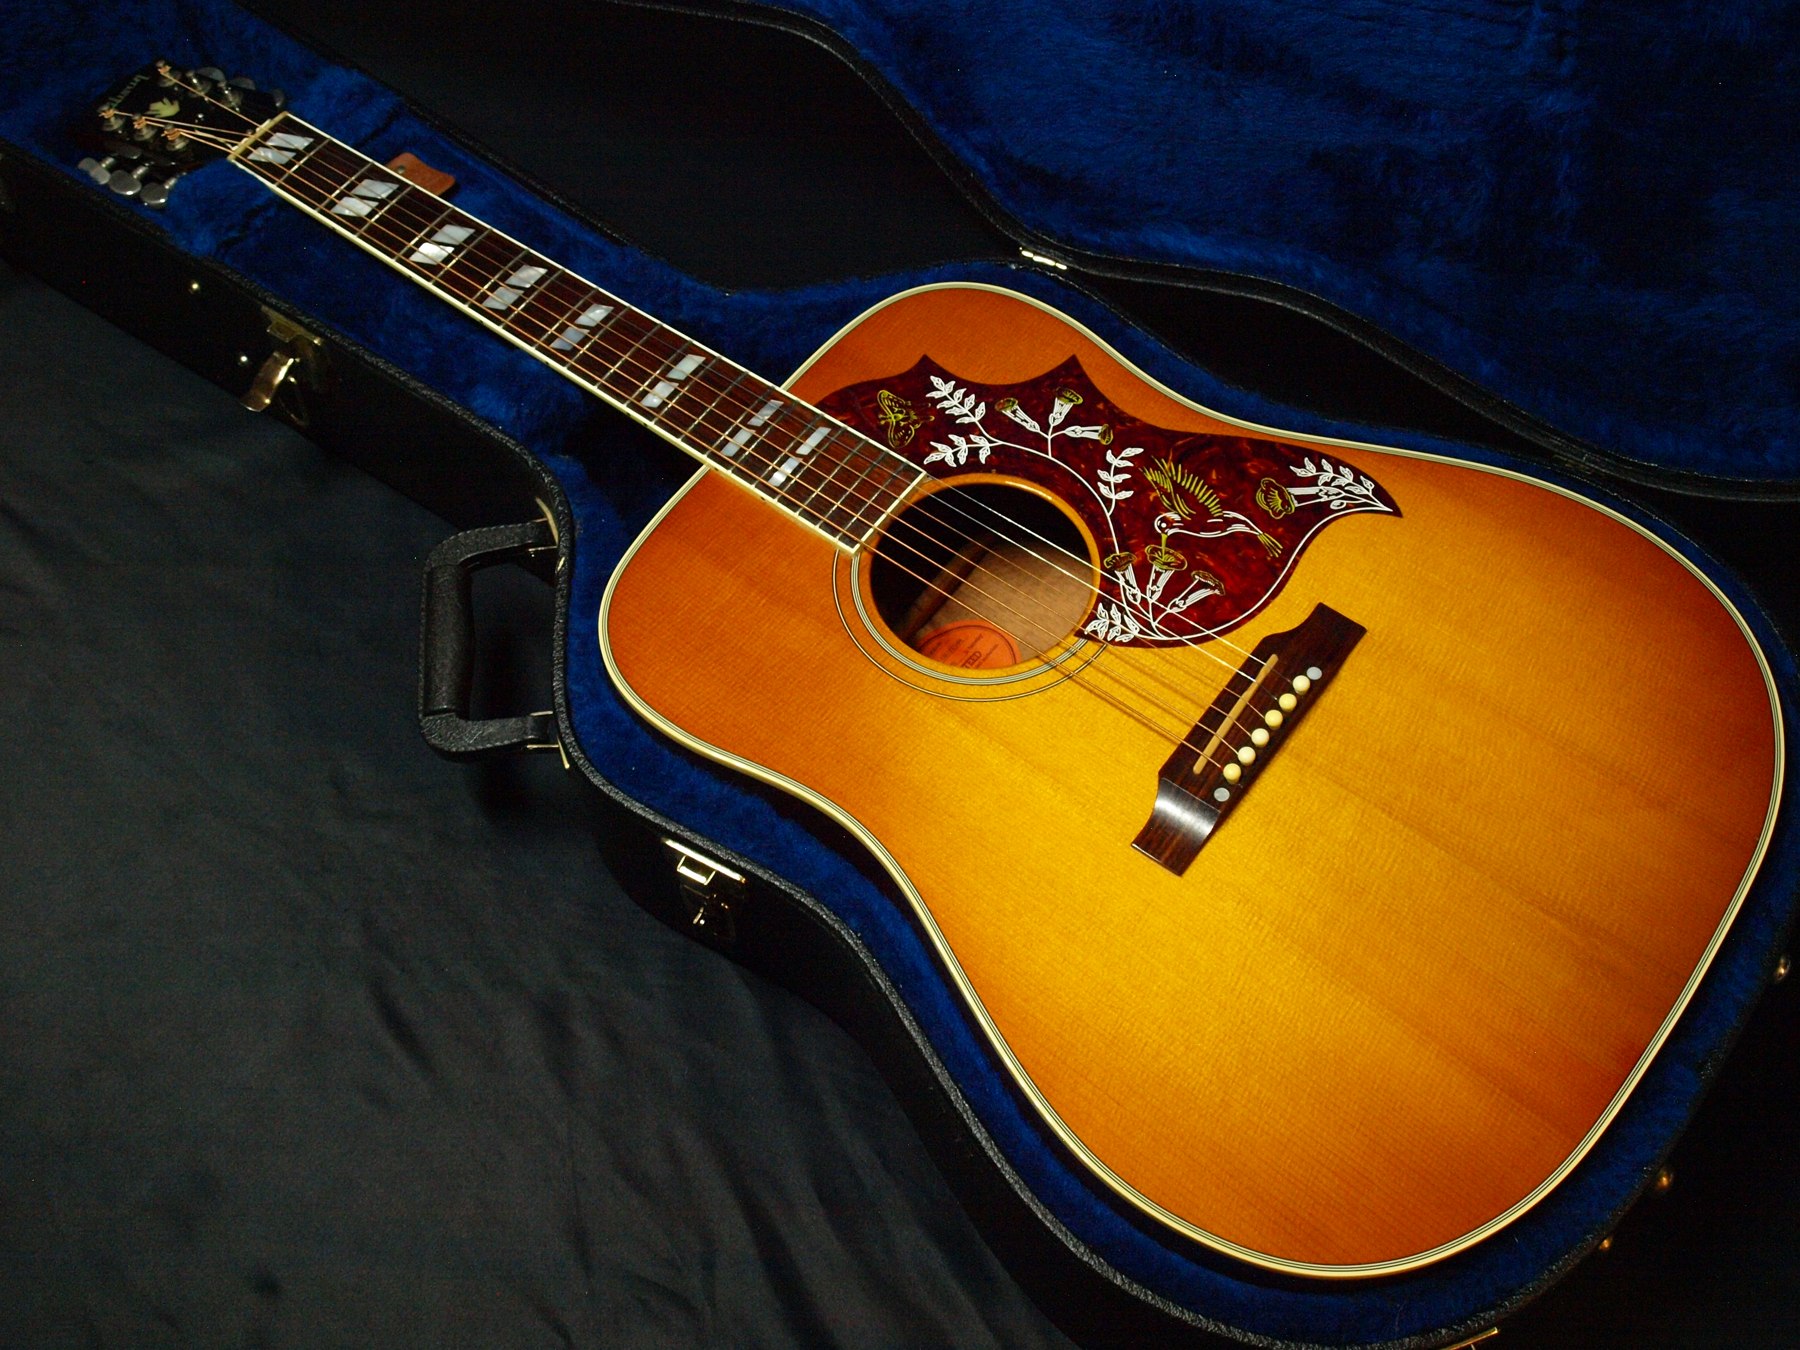 Gibson アコースティックギターHistoric Collection HummingBird中古()売却済みです。あしからずご了承